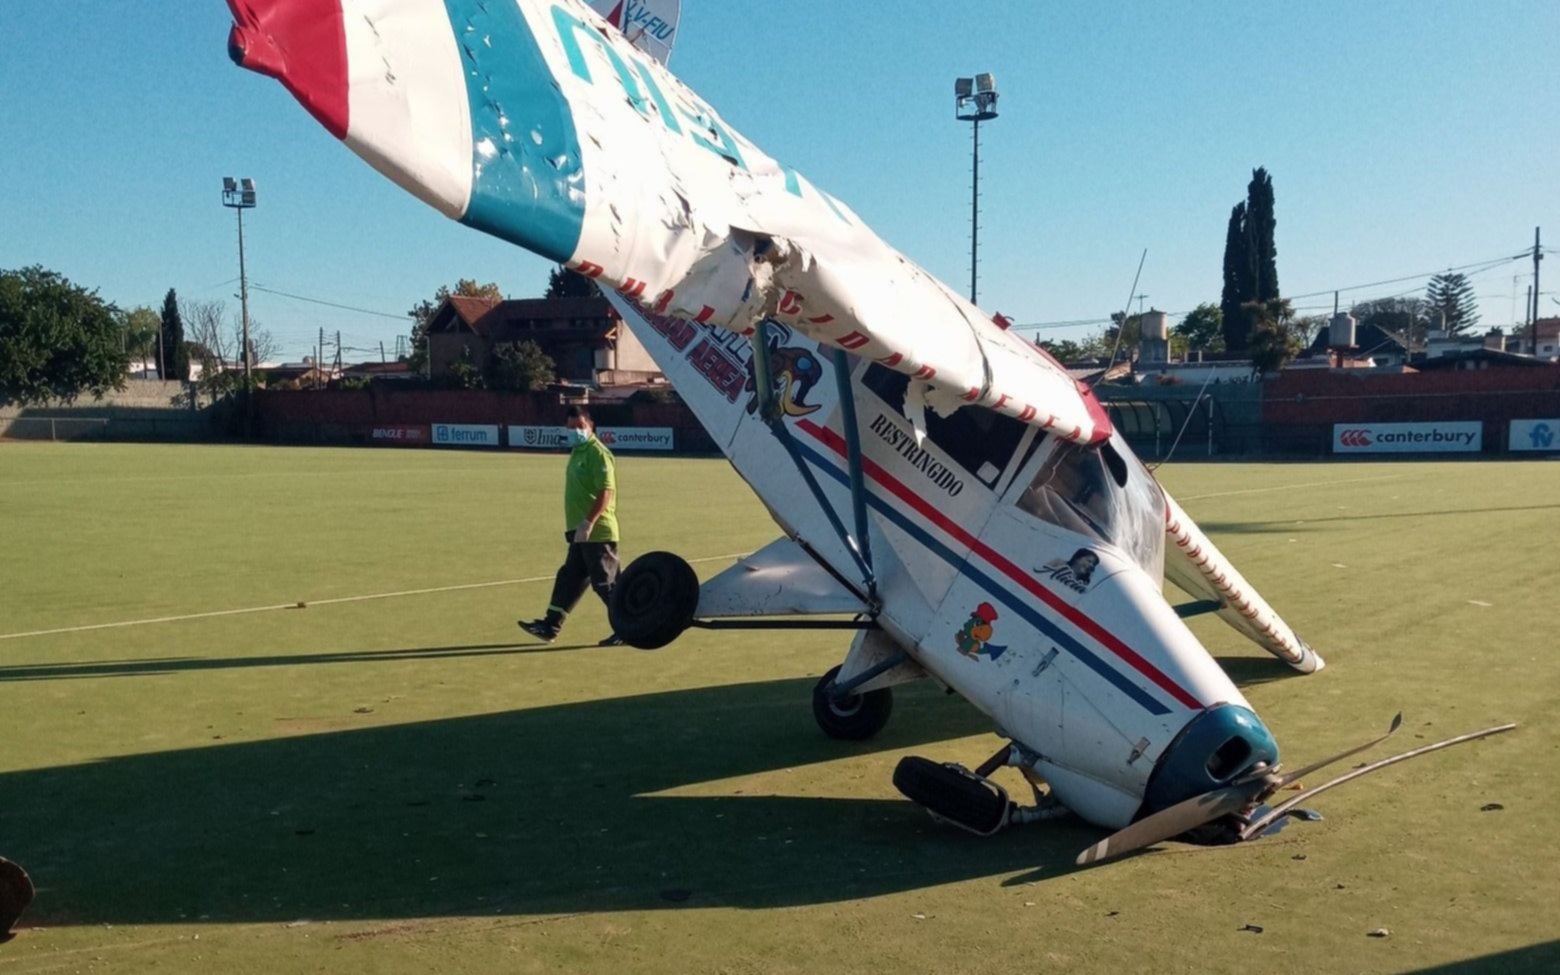 "Aterrizá donde sea": se le planchó el motor a una avioneta y cayó en un club de hockey